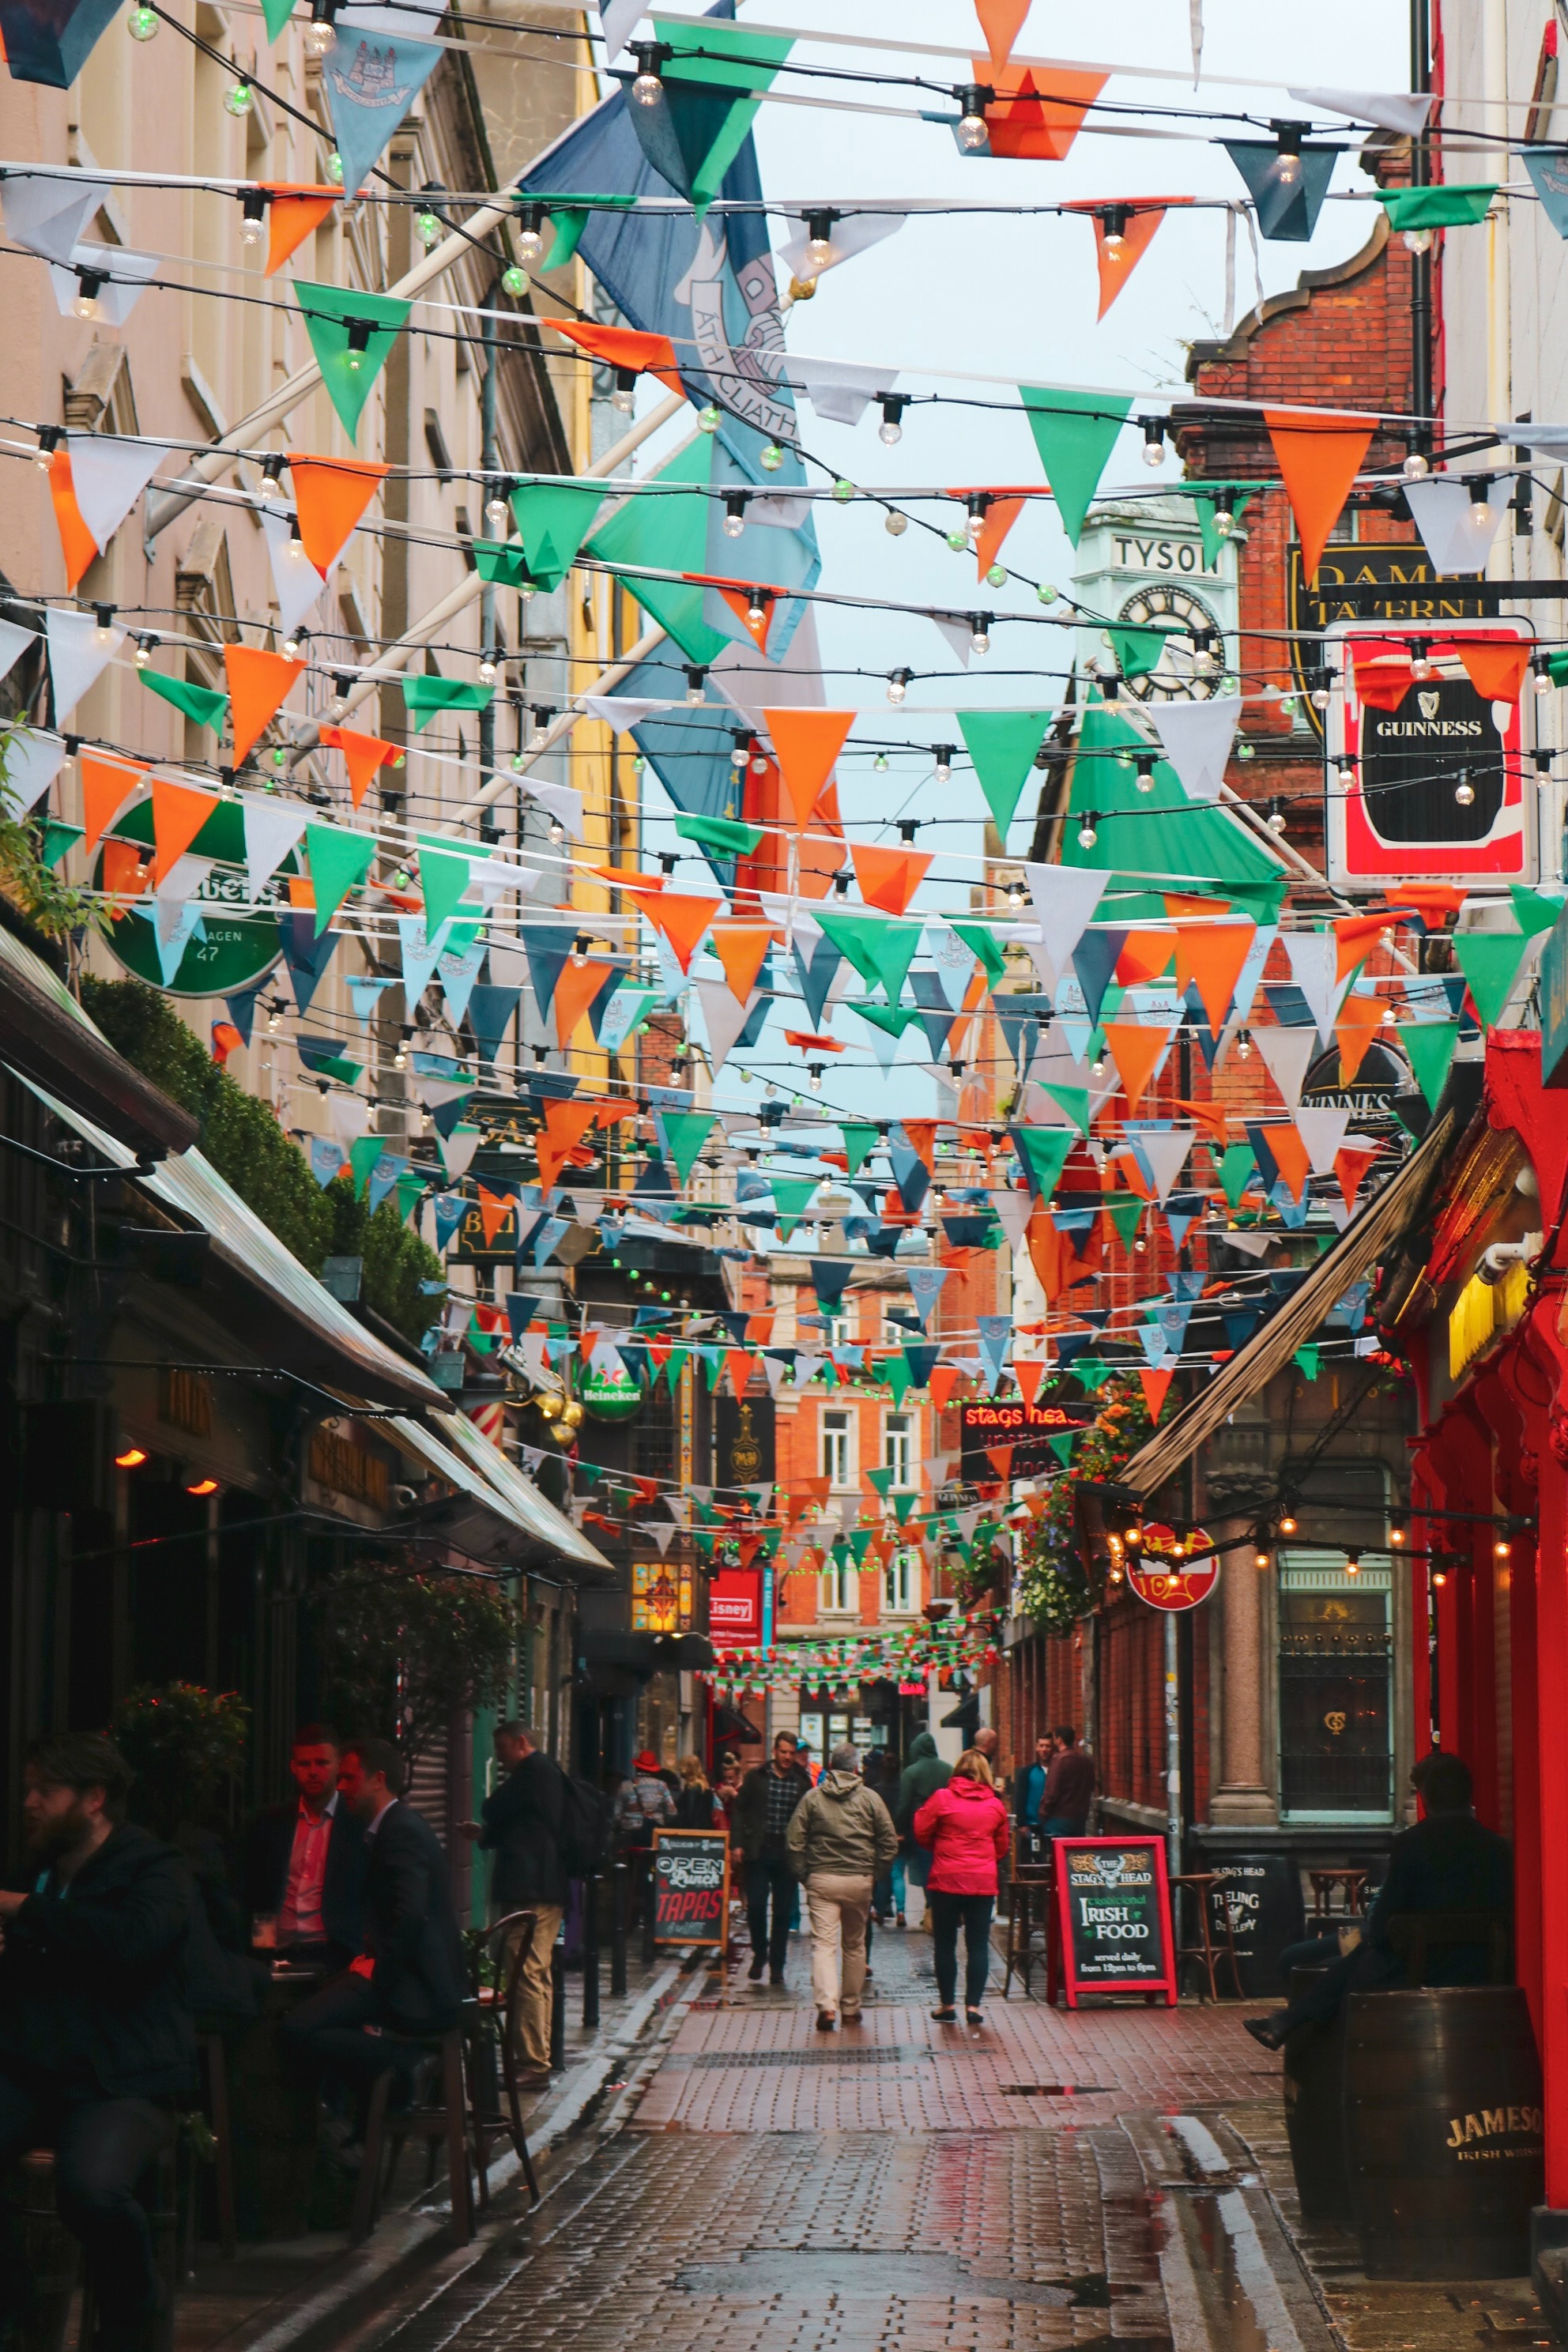 Saint Patrick day celebration in Dublin 